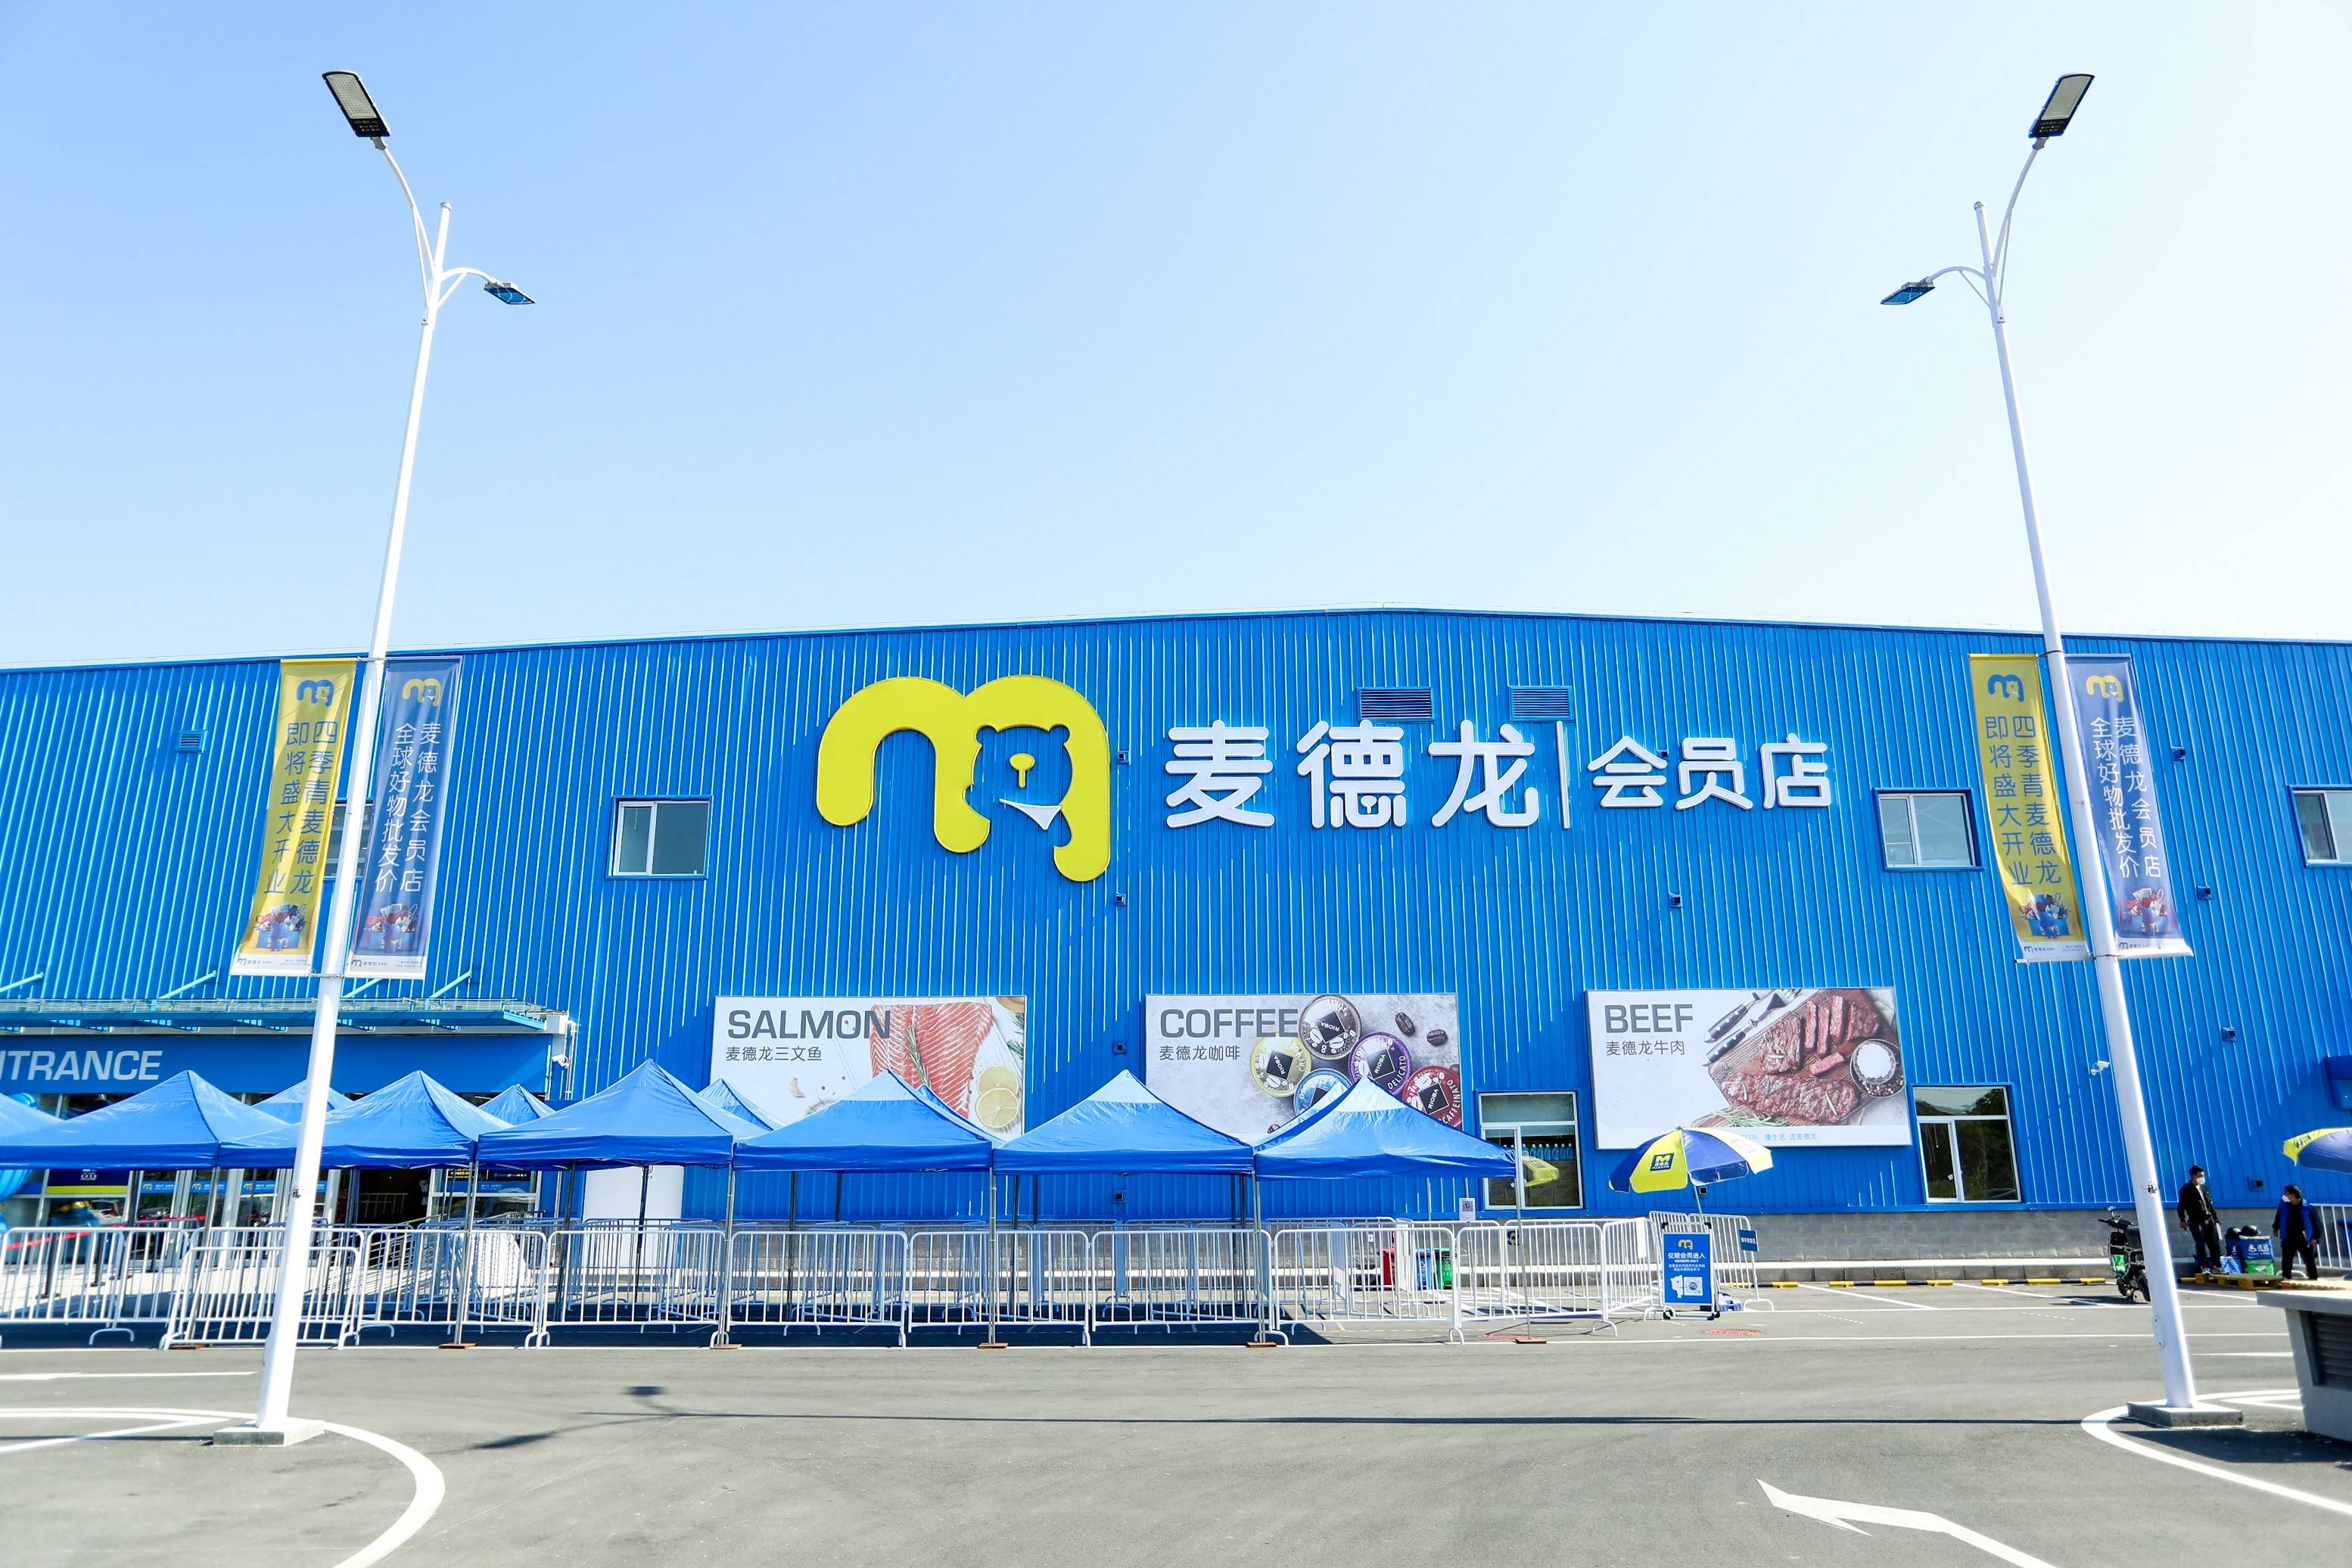 本网讯5月17日,随着位于北京市海淀区的麦德龙四季青会员店试运行